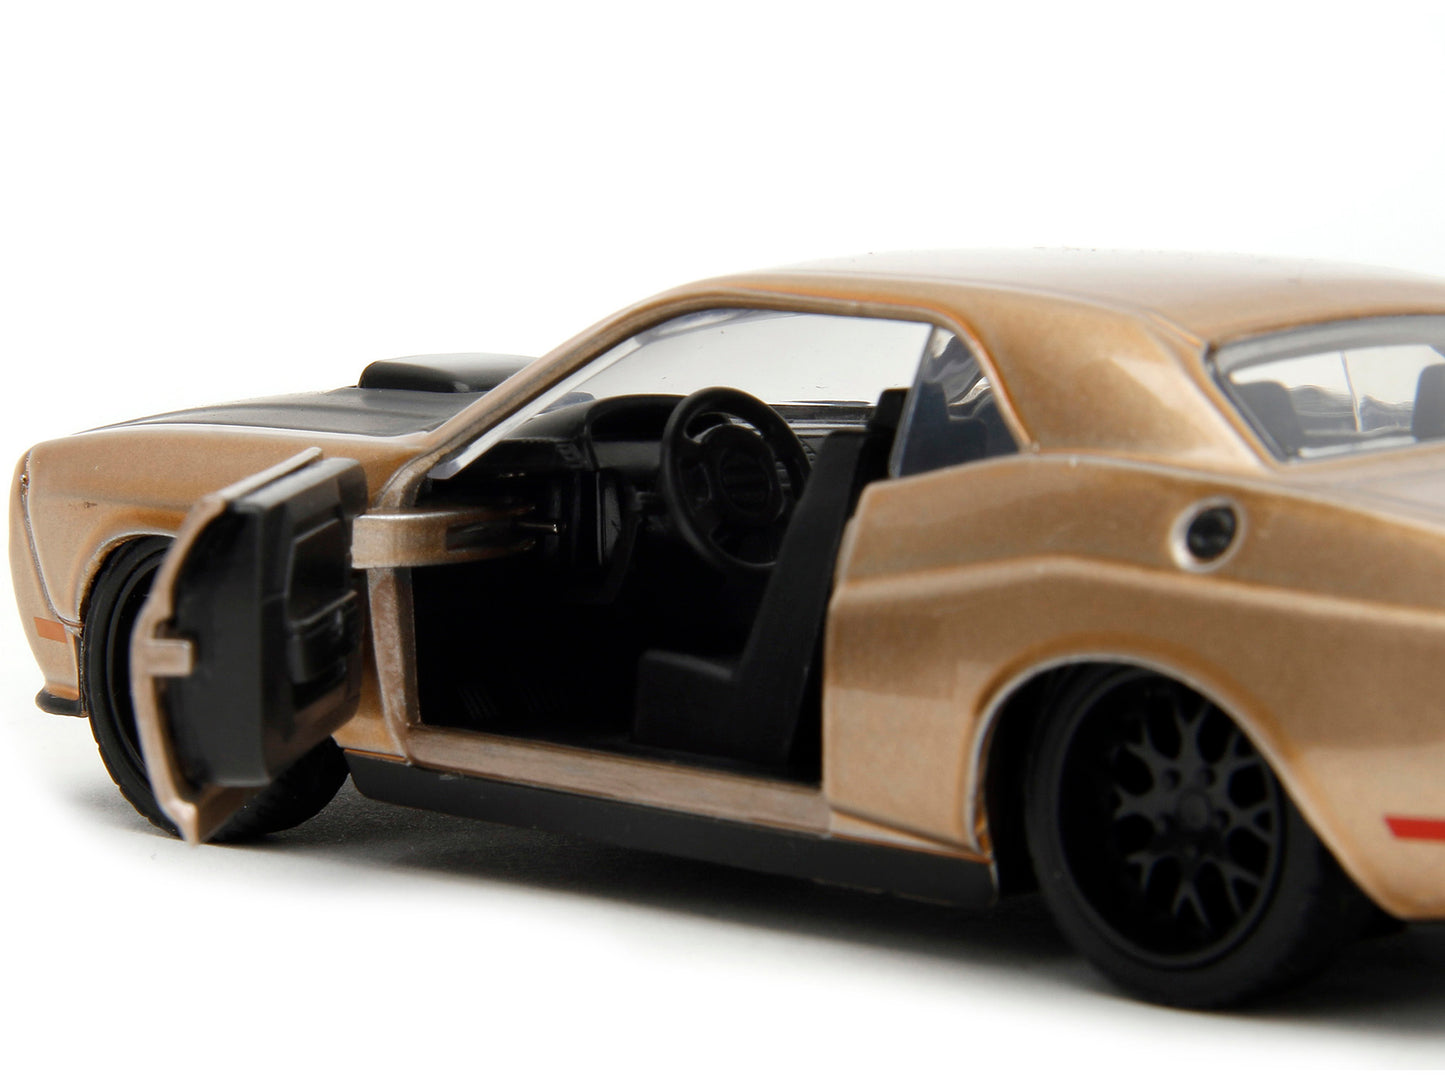 2012 dodge challenger srt8 hood slips 1/32 diecast model car